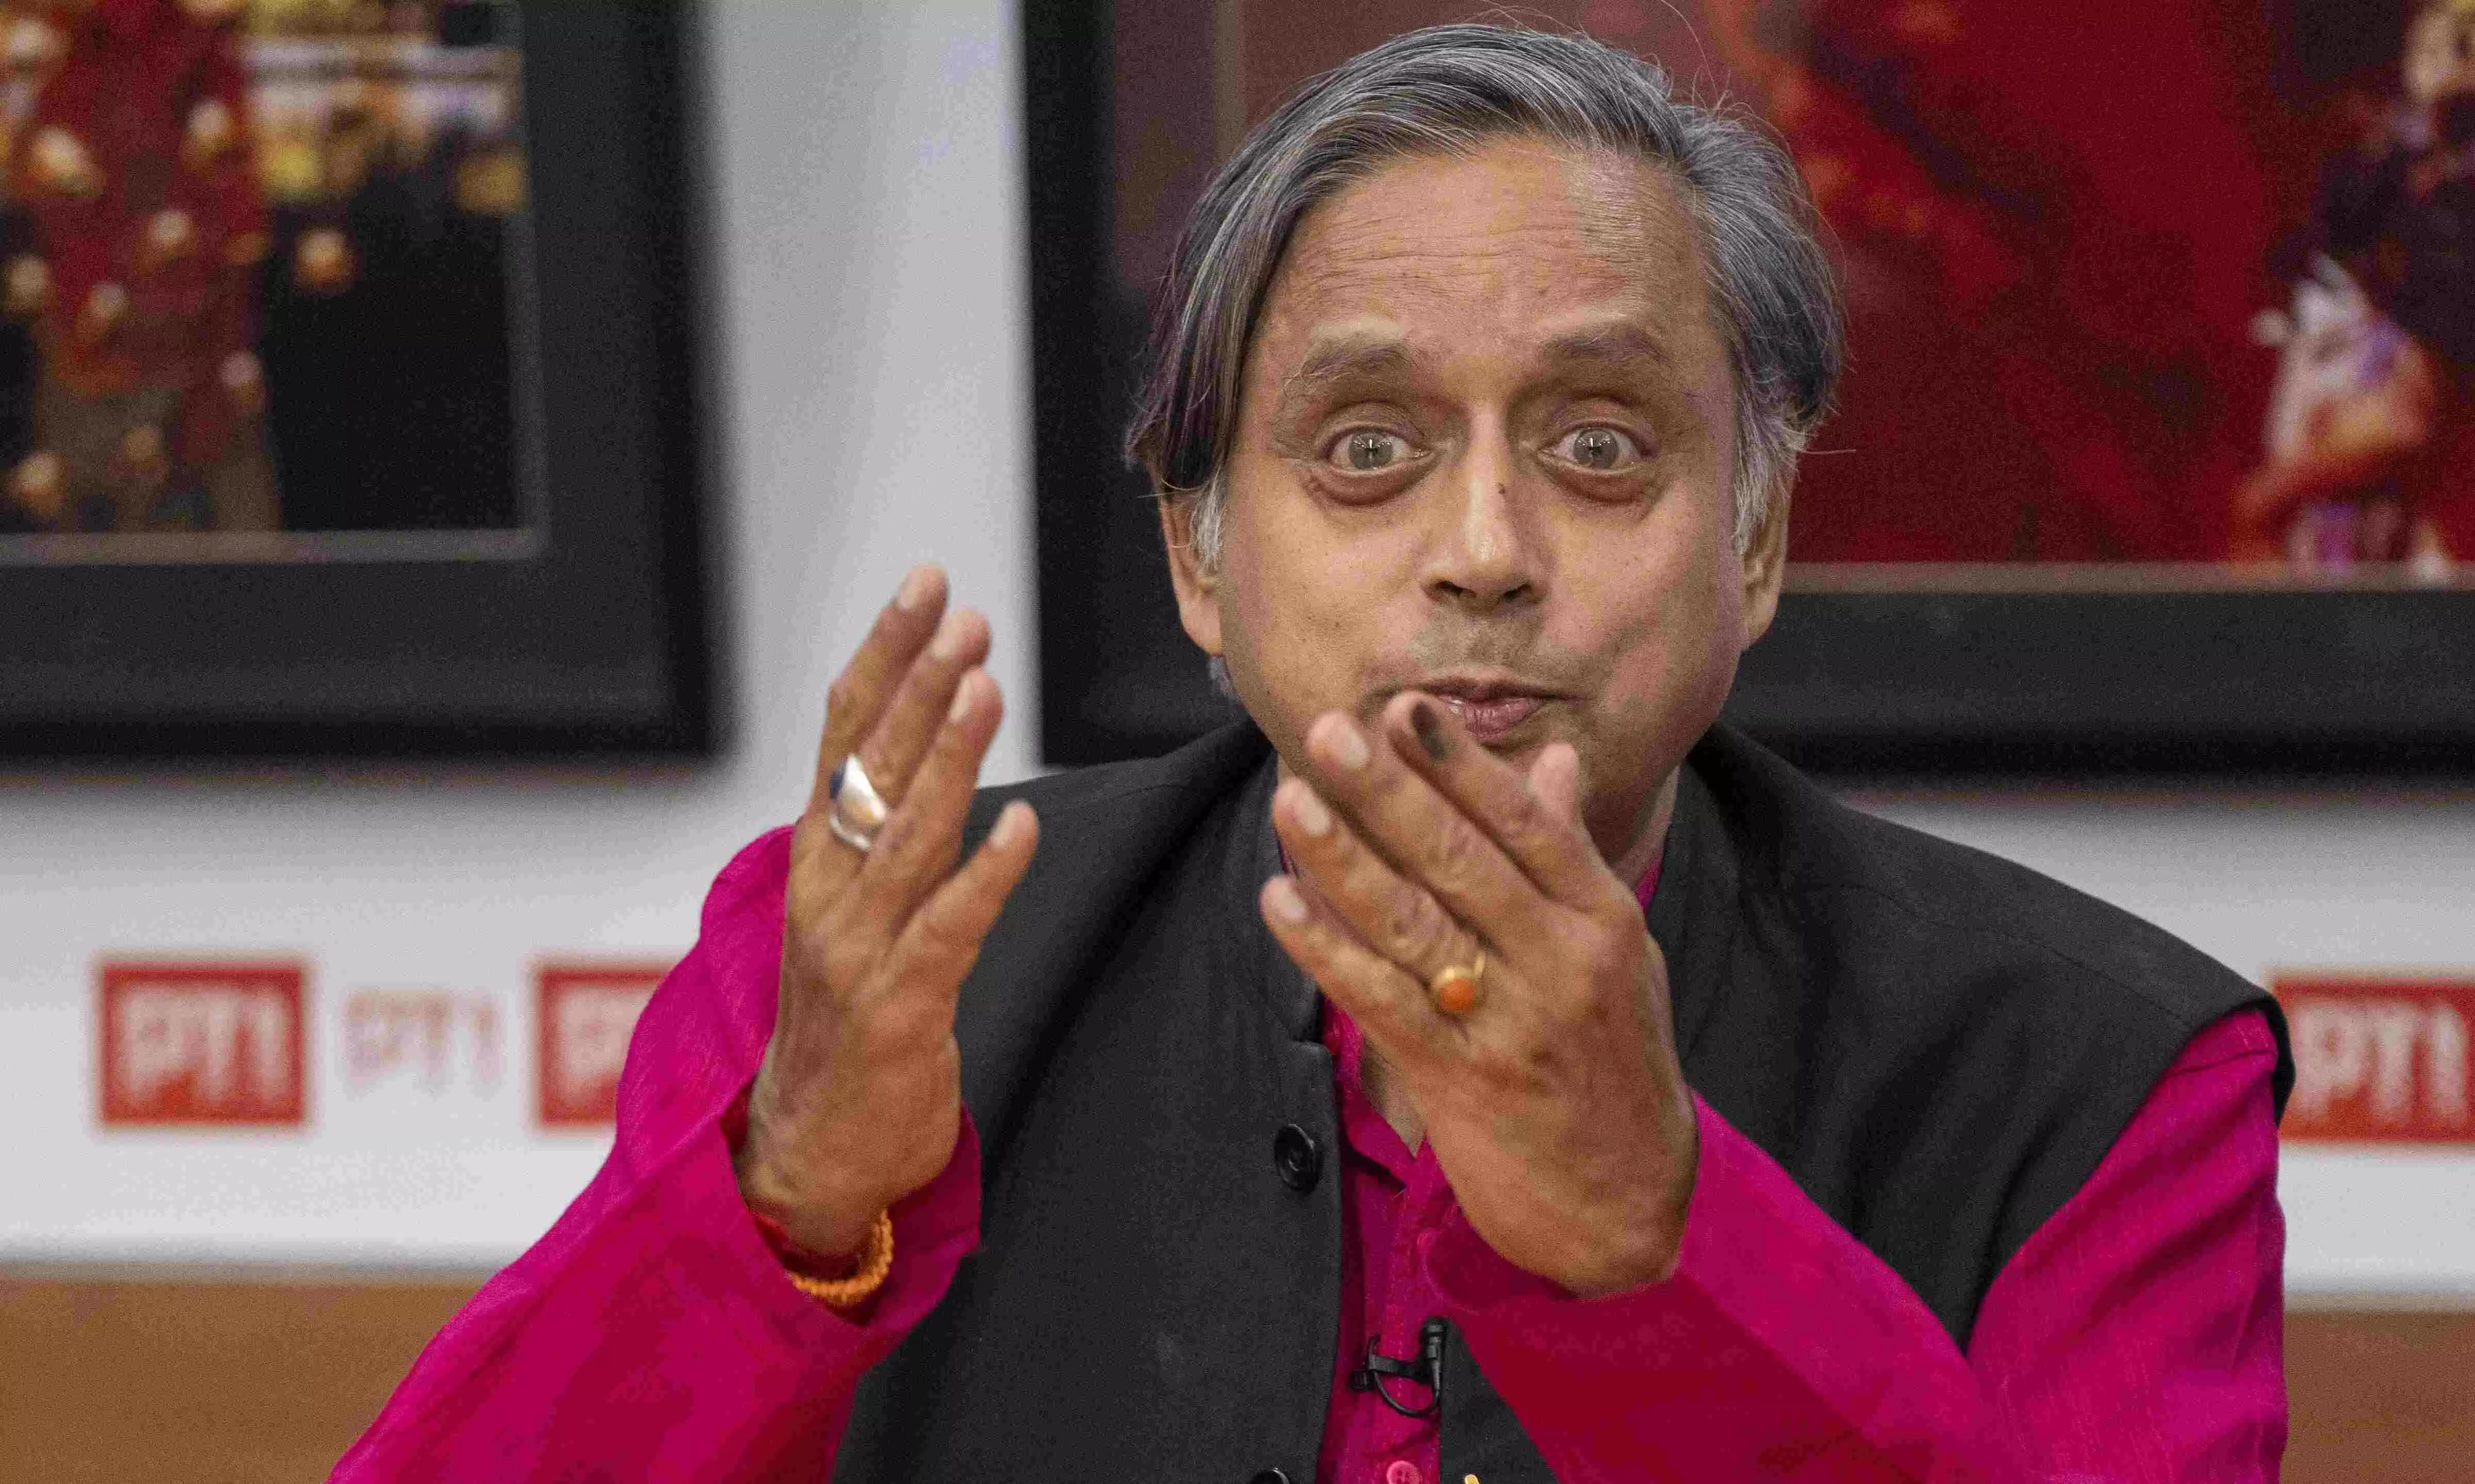 400 paar a joke, 300 paar impossible, 200 paar challenge for BJP: Tharoor